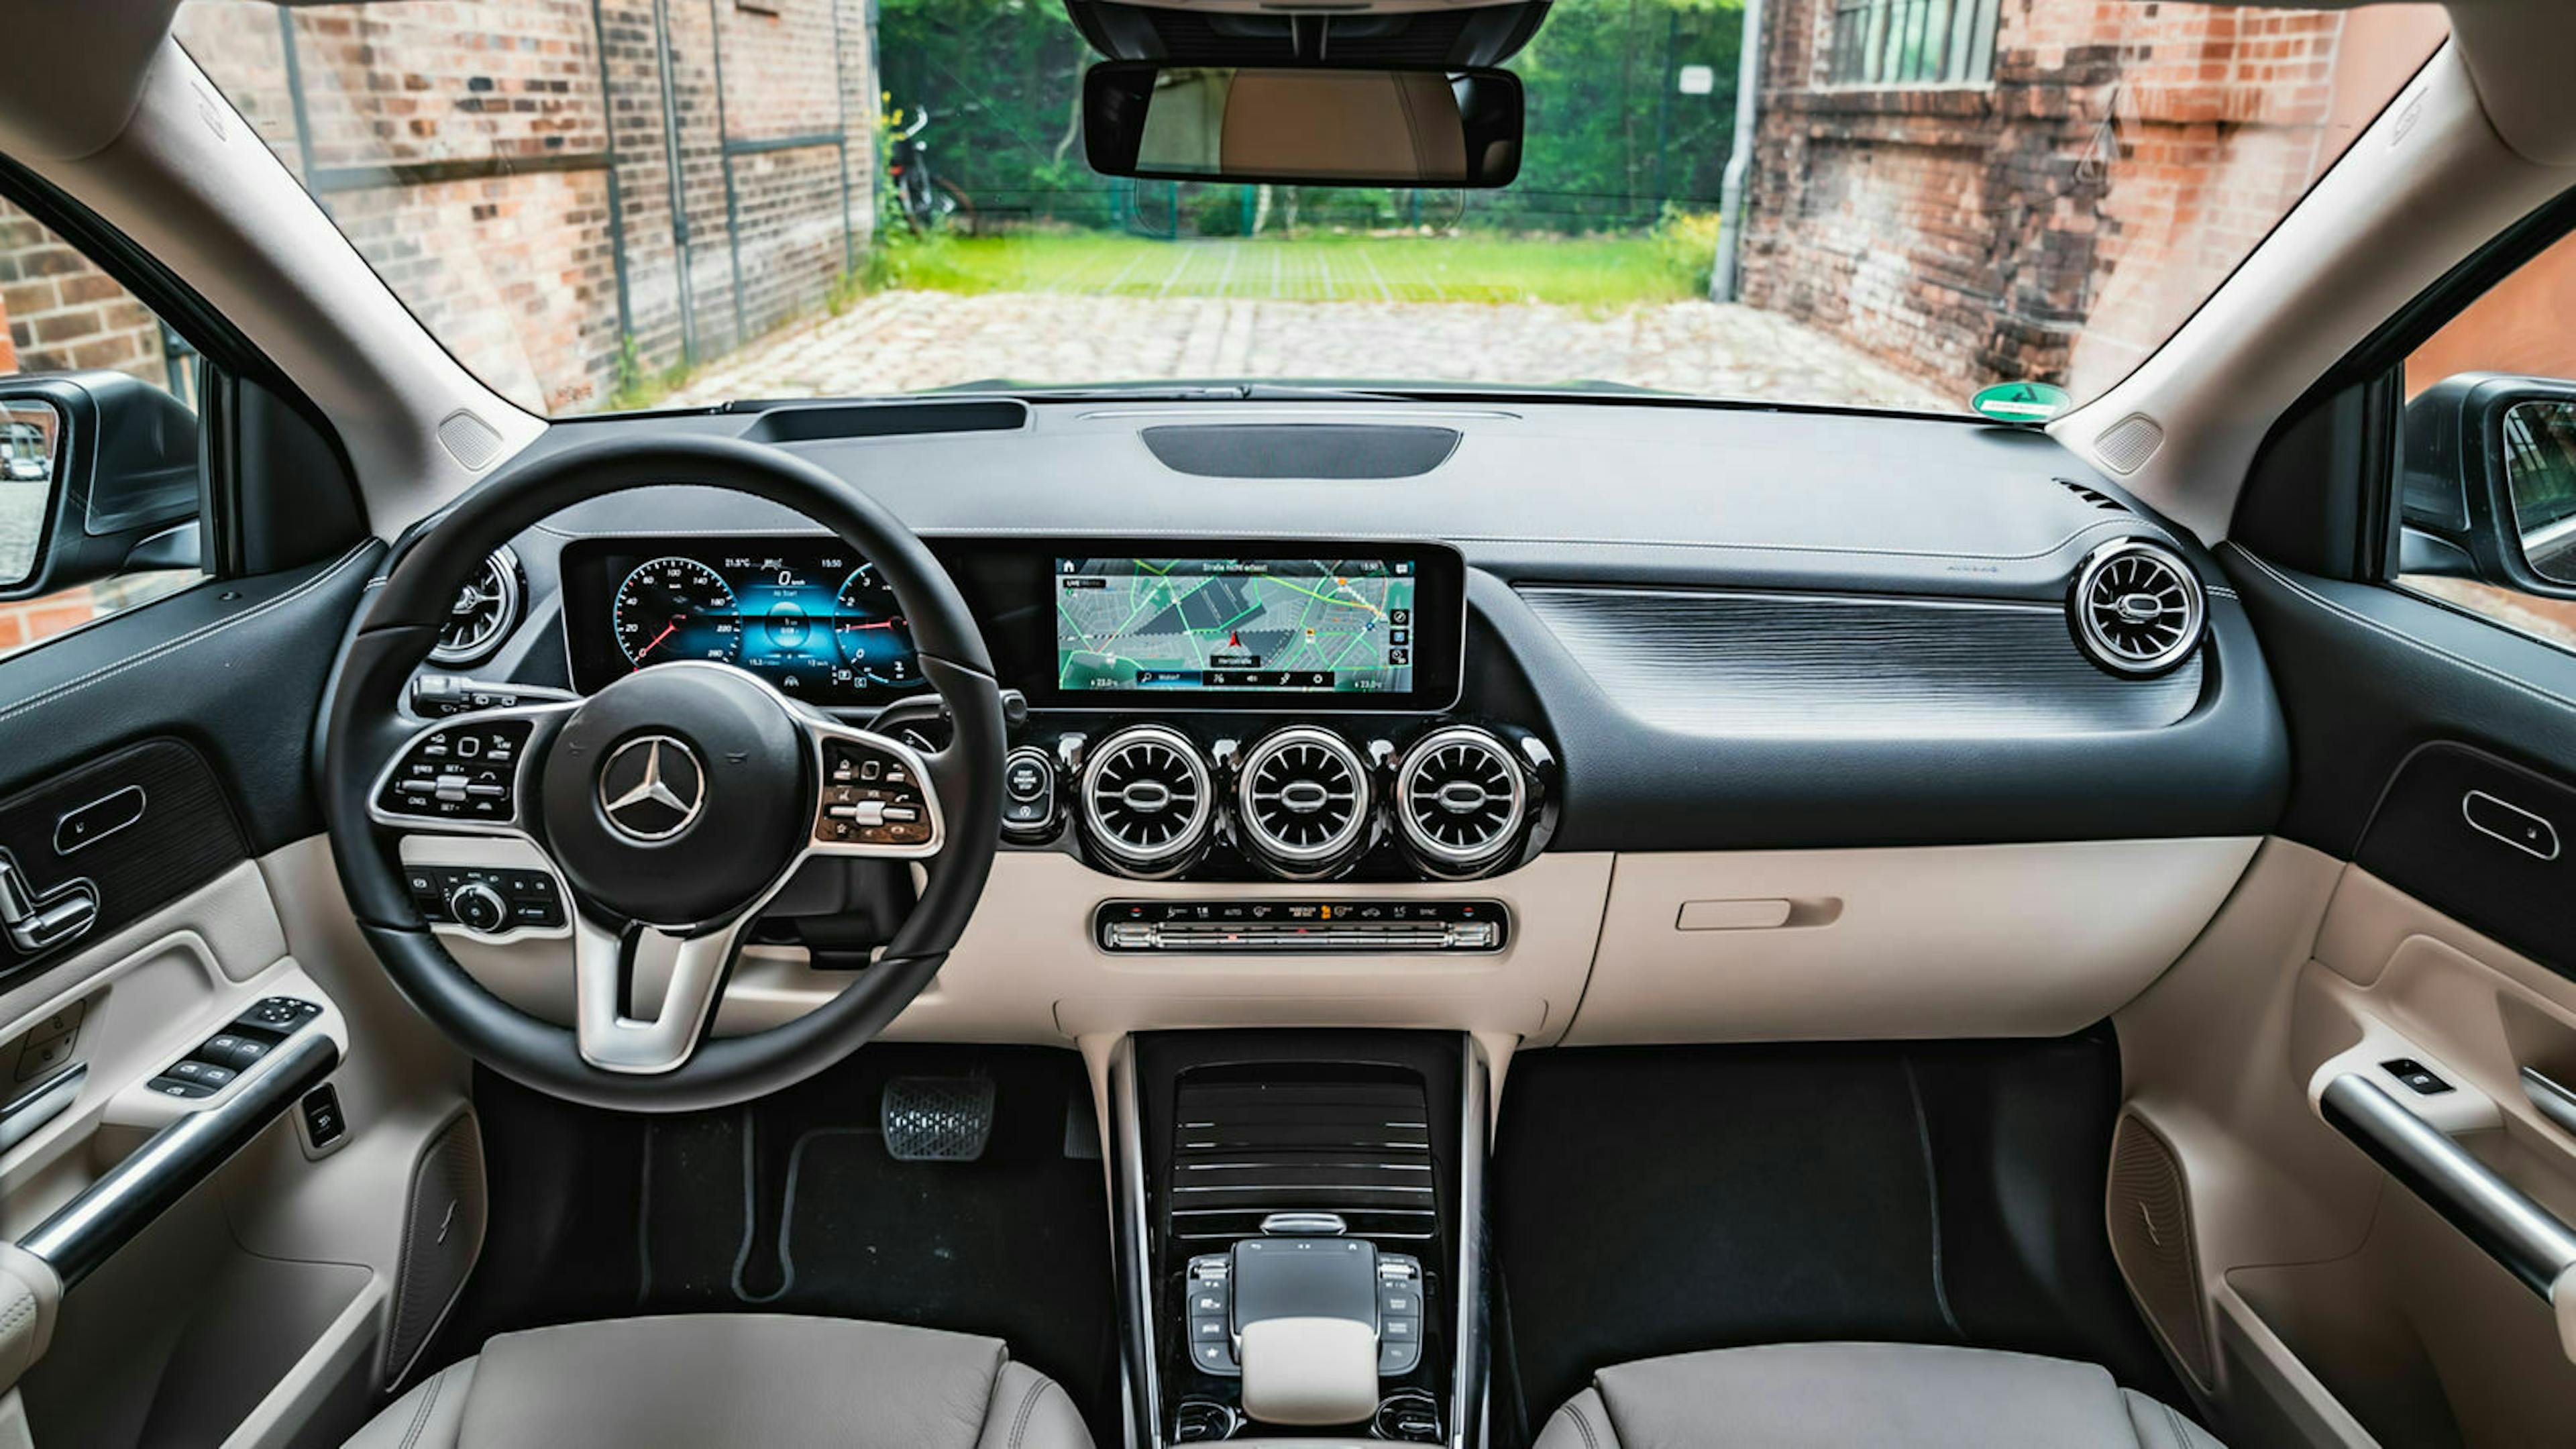 Zu sehen ist das Cokpit des Mercedes GLA 200